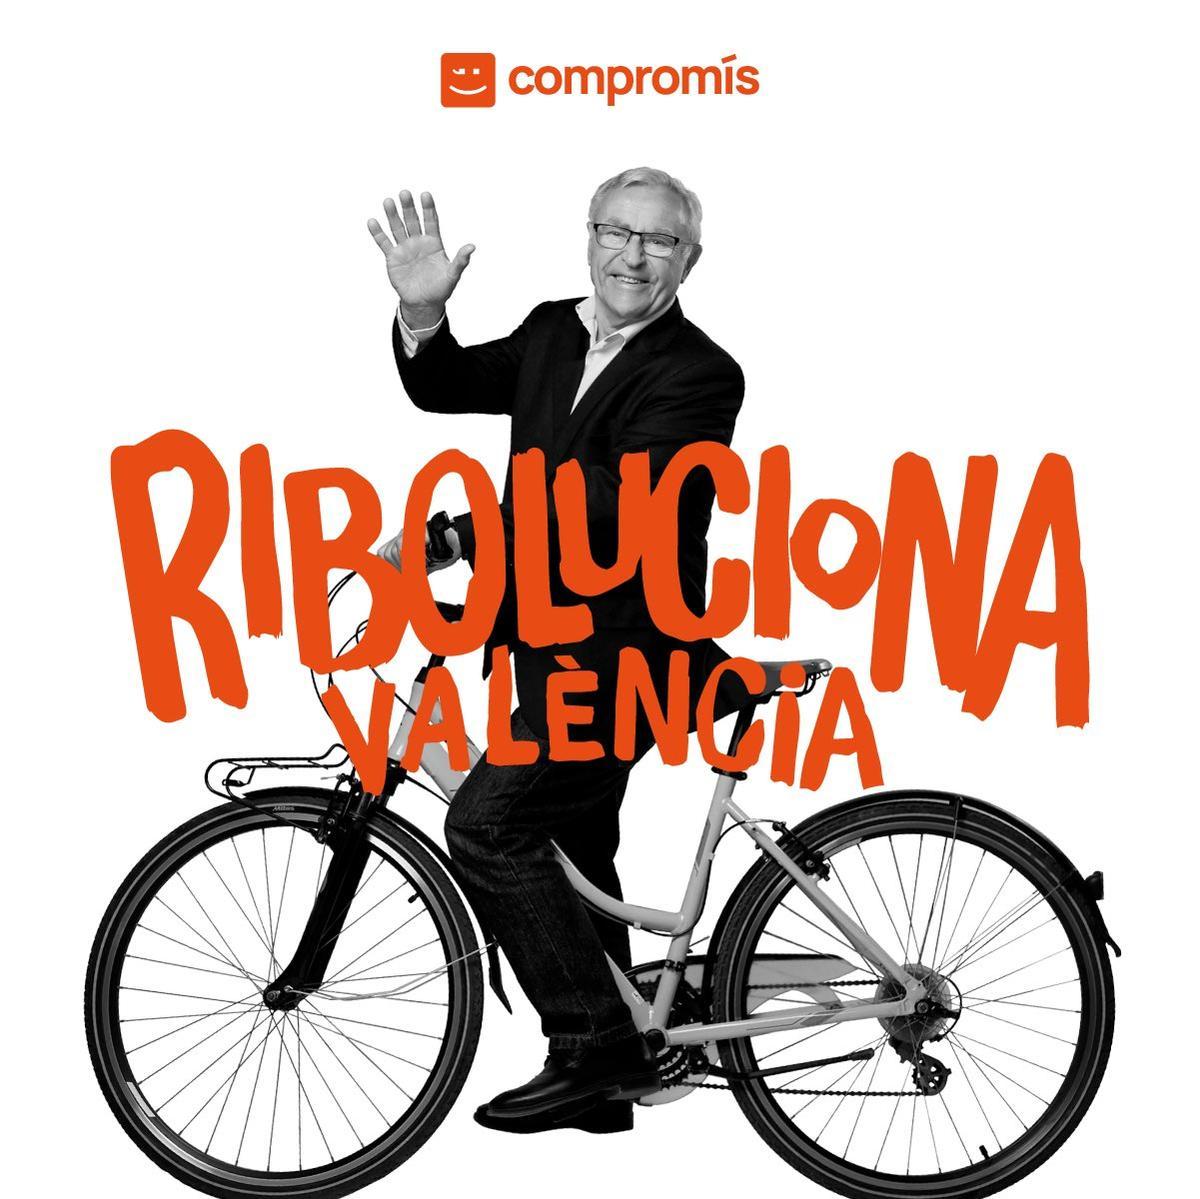 Joan Ribó, actual alcalde de Valencia, usa su nombre para hacer un juego de palabras y decir que Riboluciona la ciudad